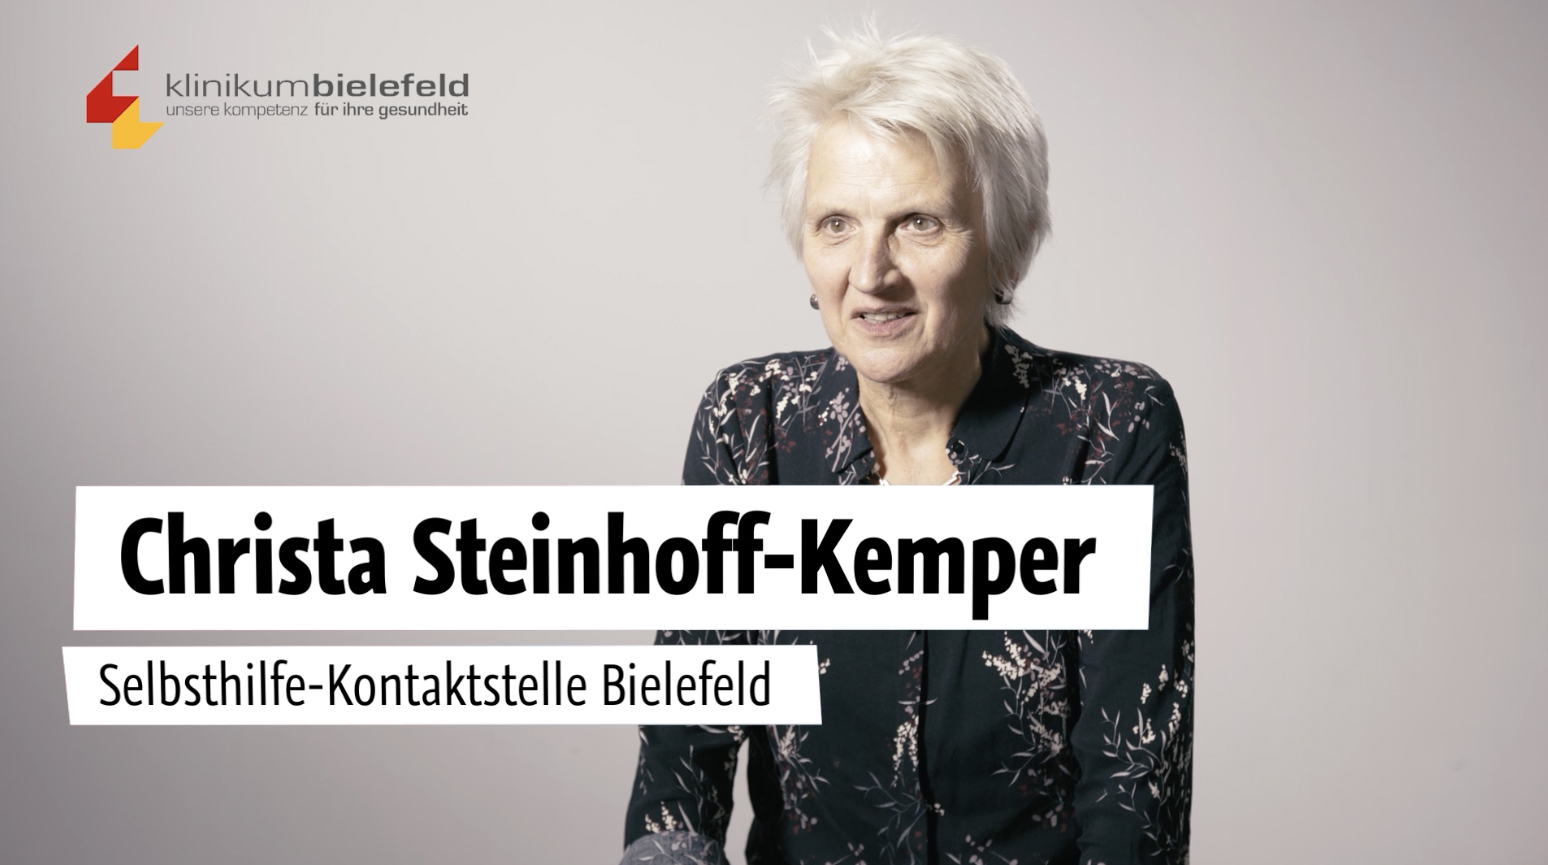 YouTube Video 10 Jahre selbsthilfefreundliches Krankenhaus Interview mit Christa Steinhoff-Kemper